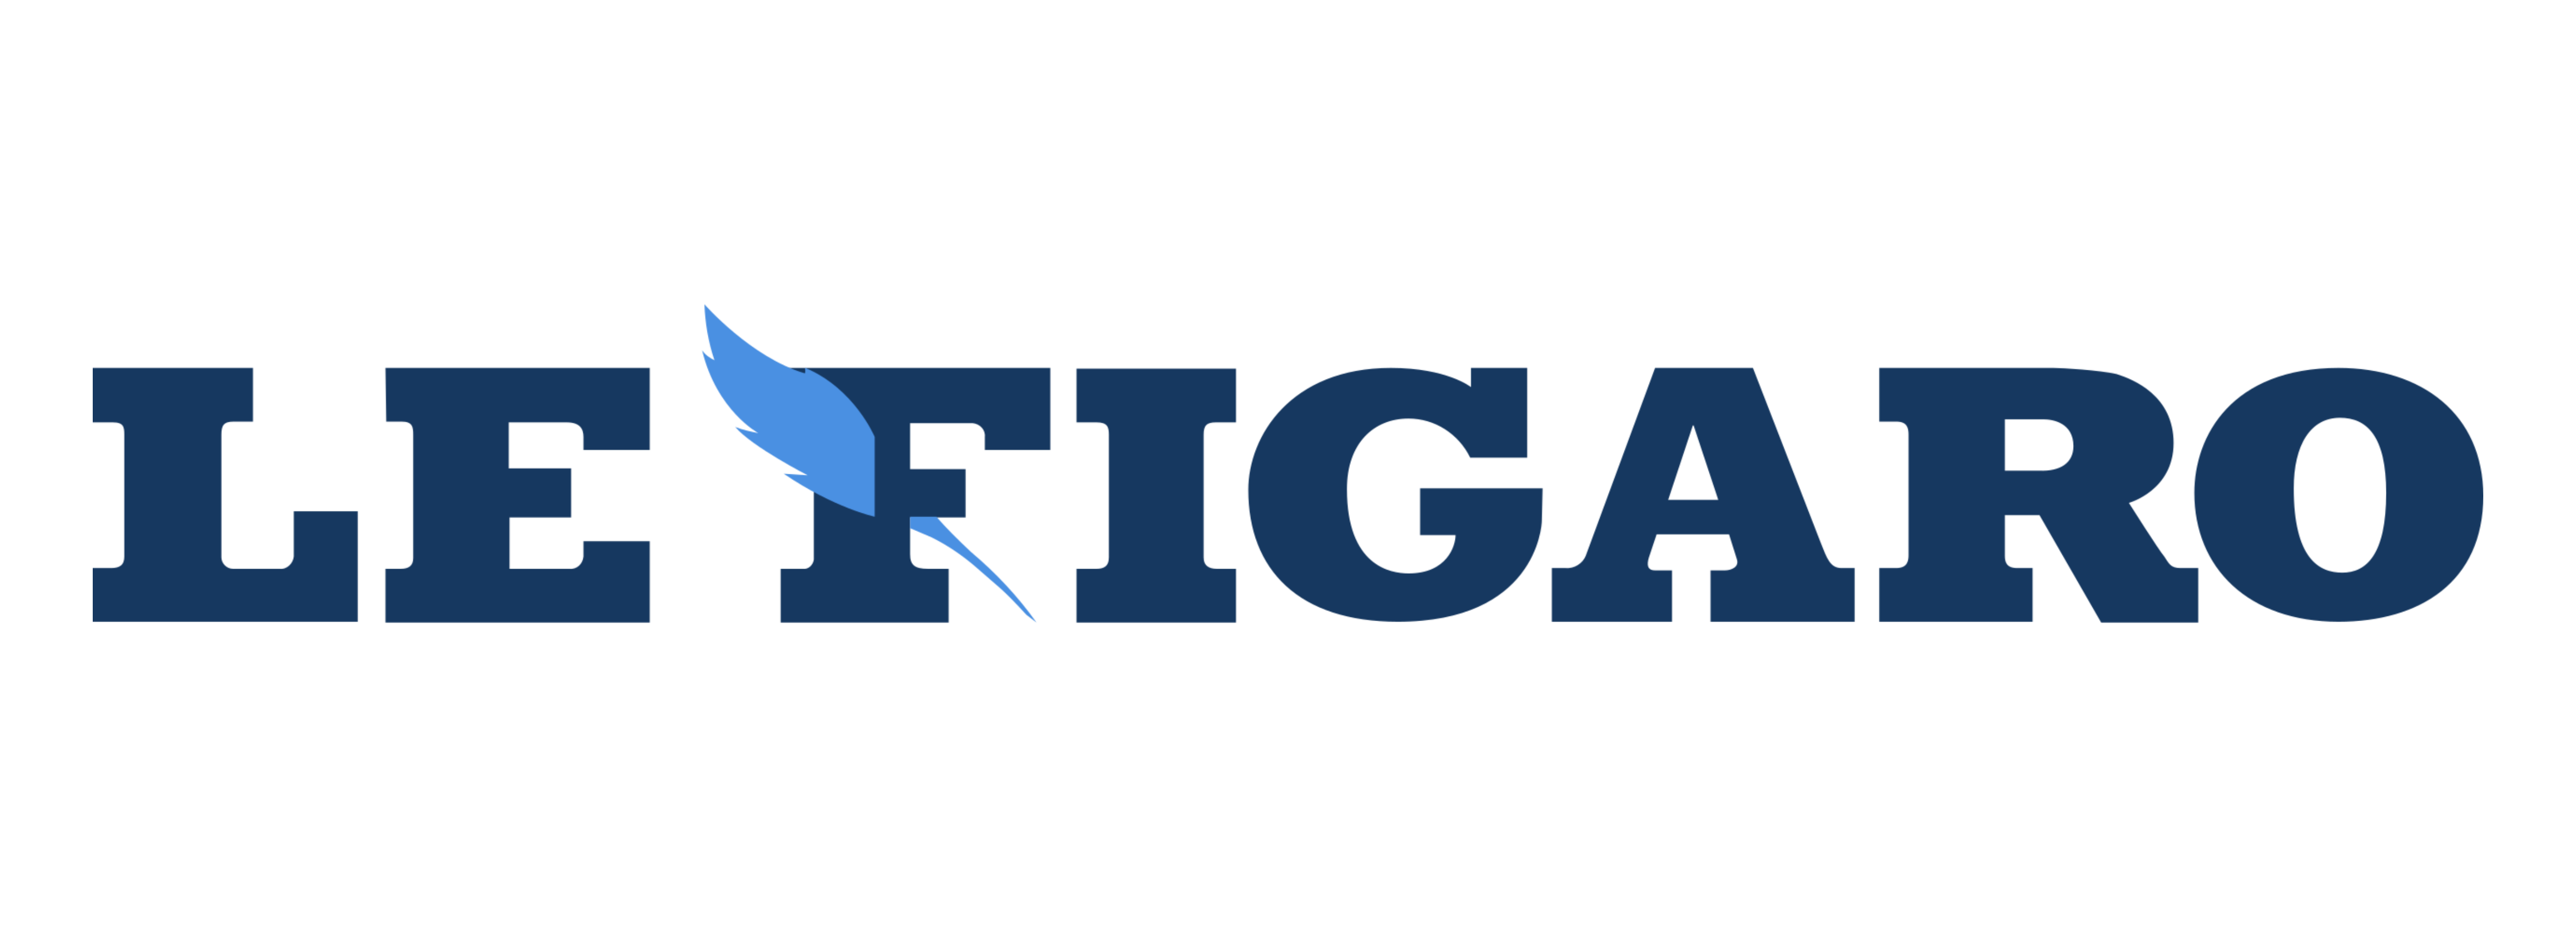 логотип le figaro